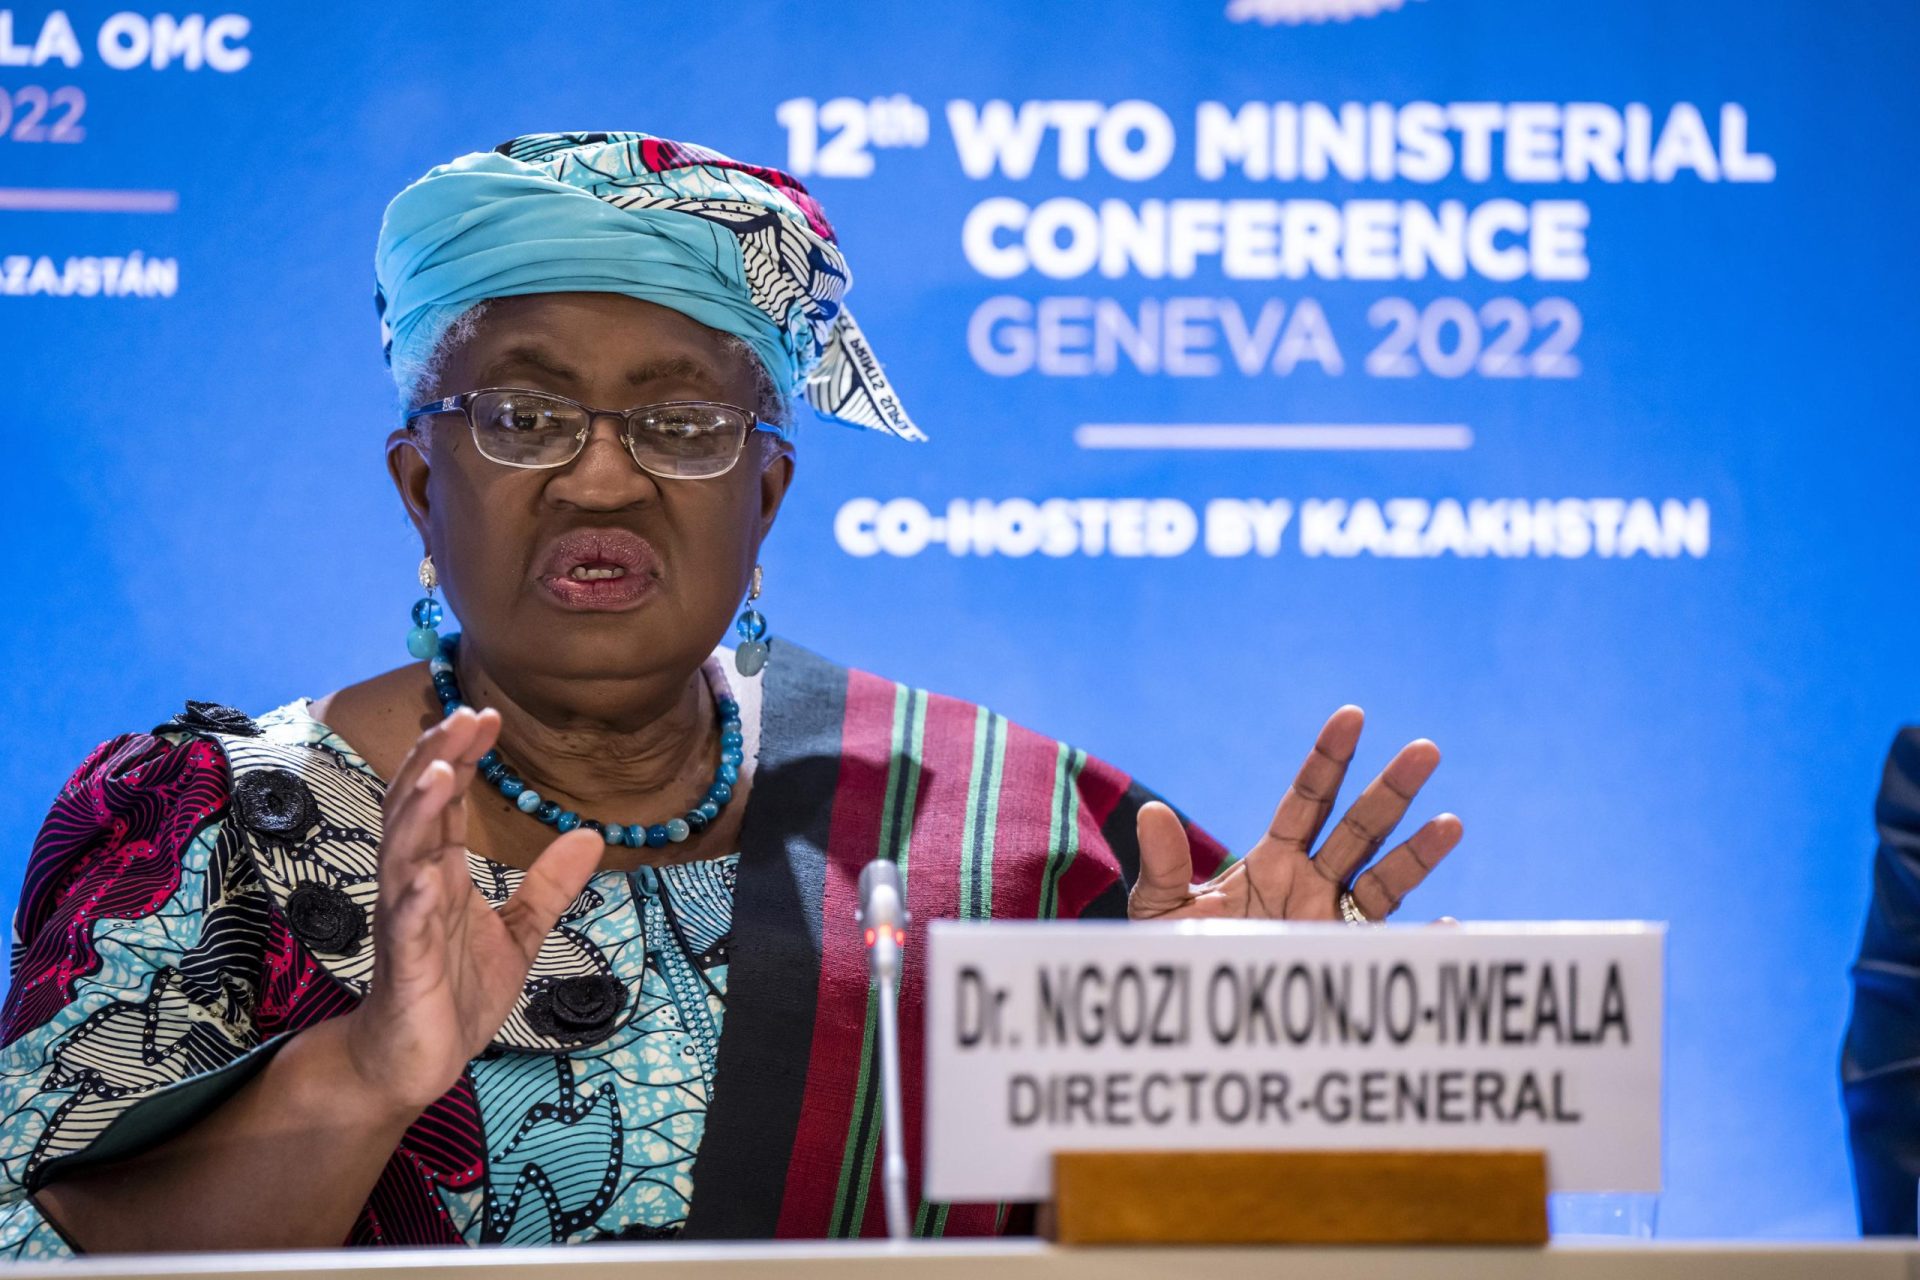 Los ministros de la OMC llegan a acuerdos sobre pesca, alimentos y vacunas contra el COVID